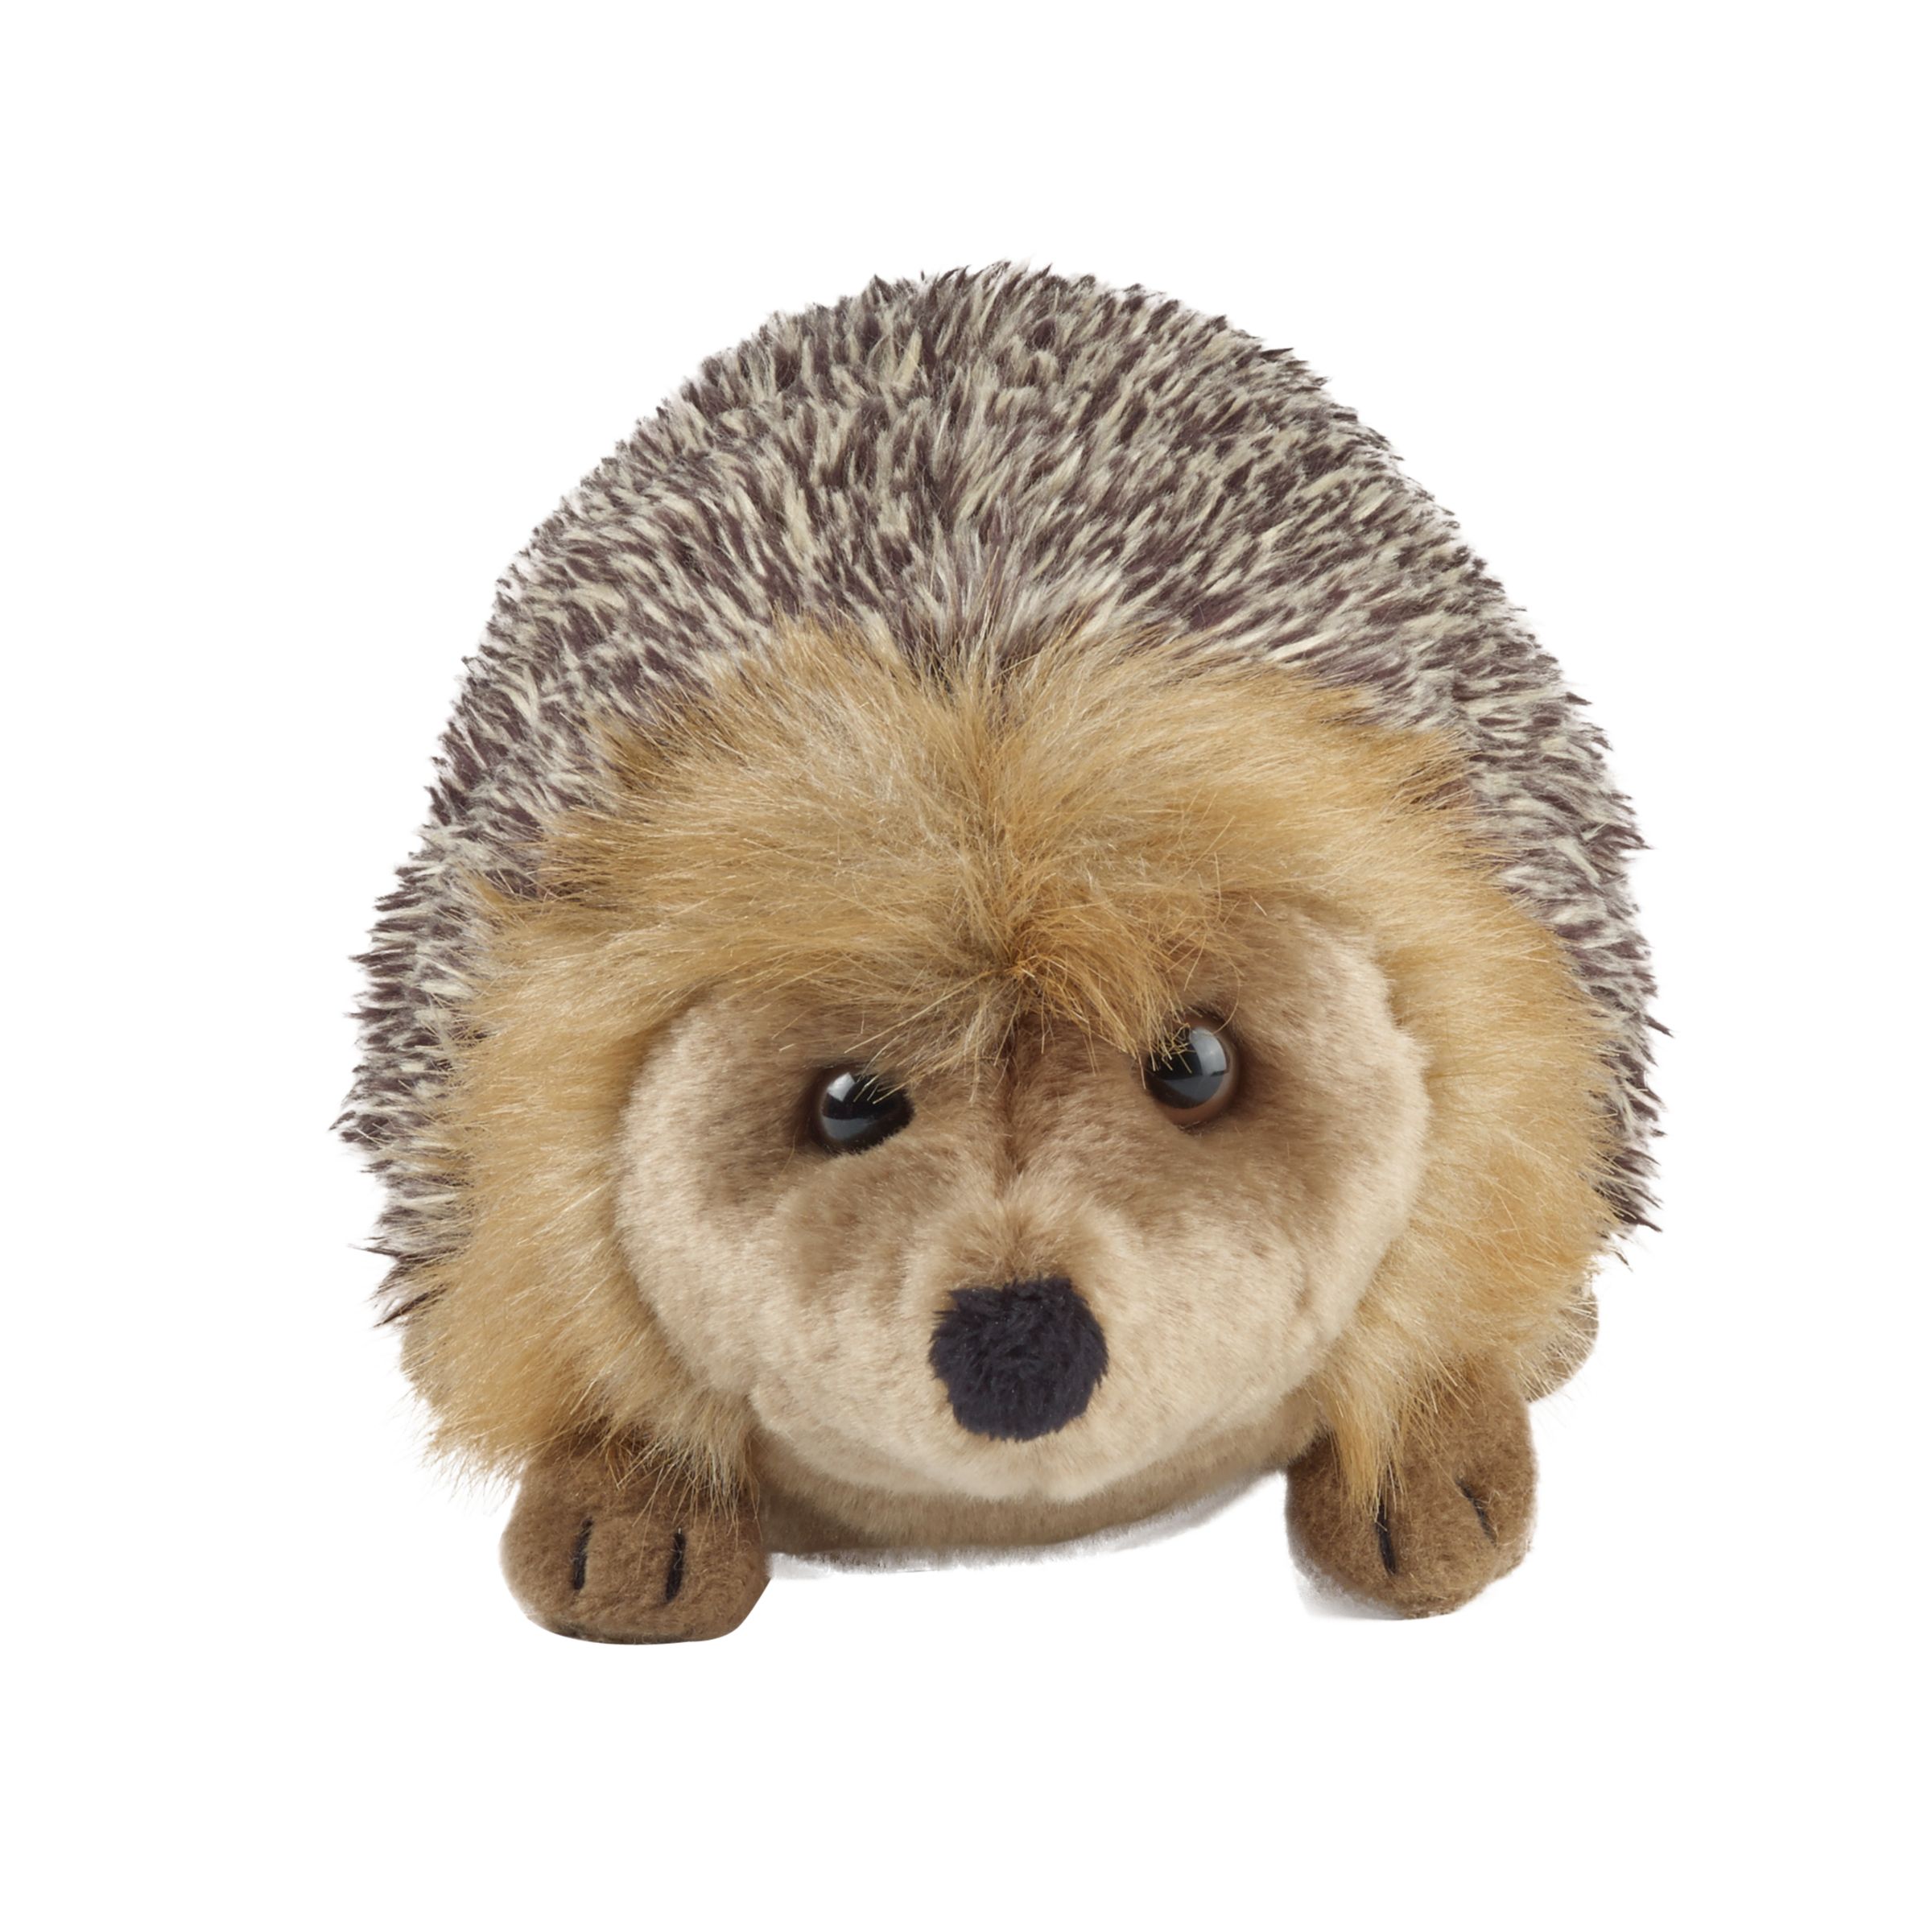 cuddly toy hedgehog